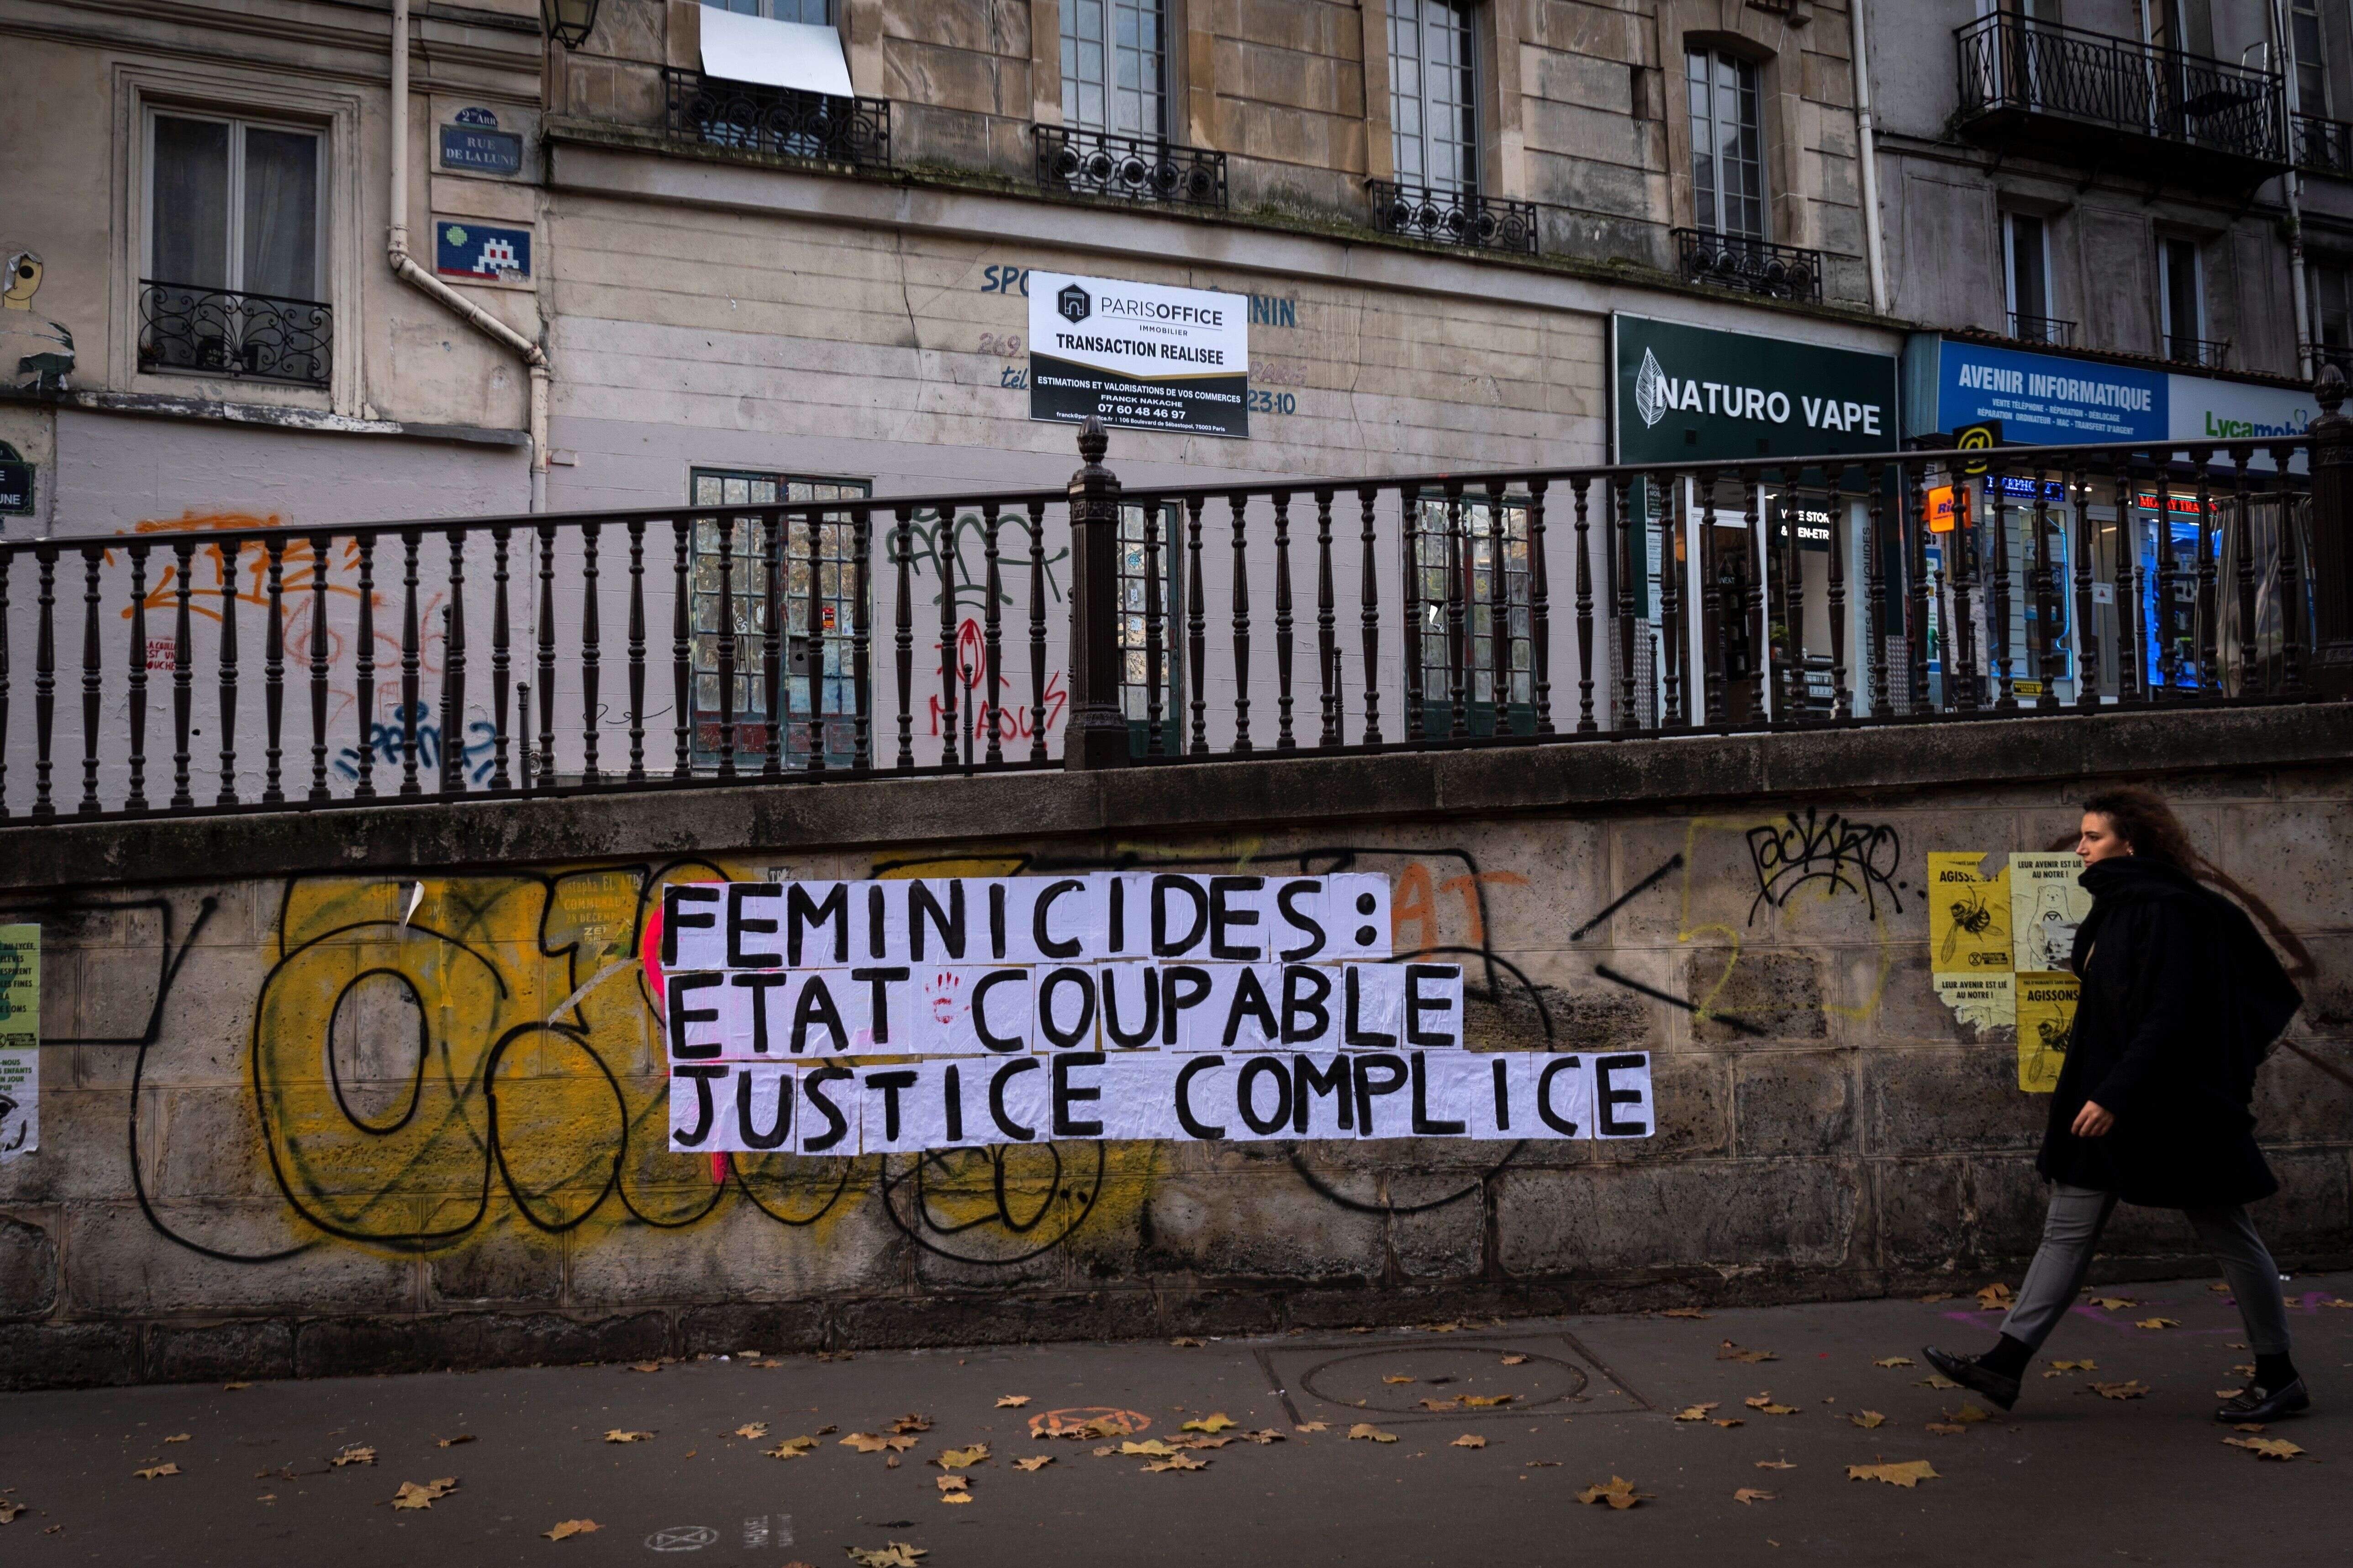 Un collage militant dénonçant l'inaction de l'État et de la justice contre les féminicides, à Paris, en novembre 2019.